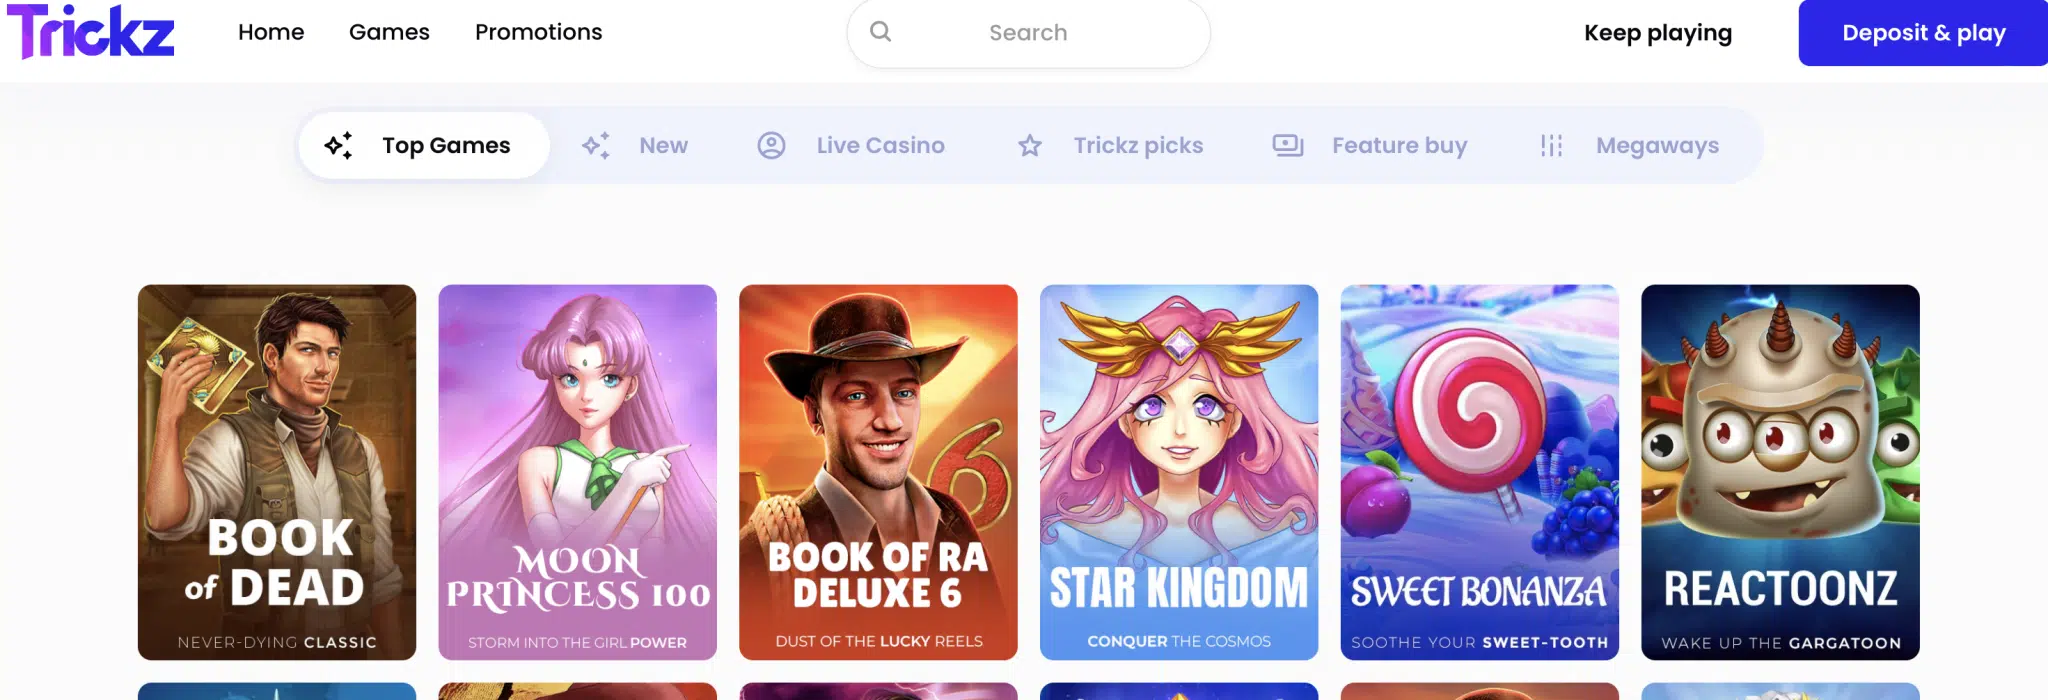 Trickz Casino homepage